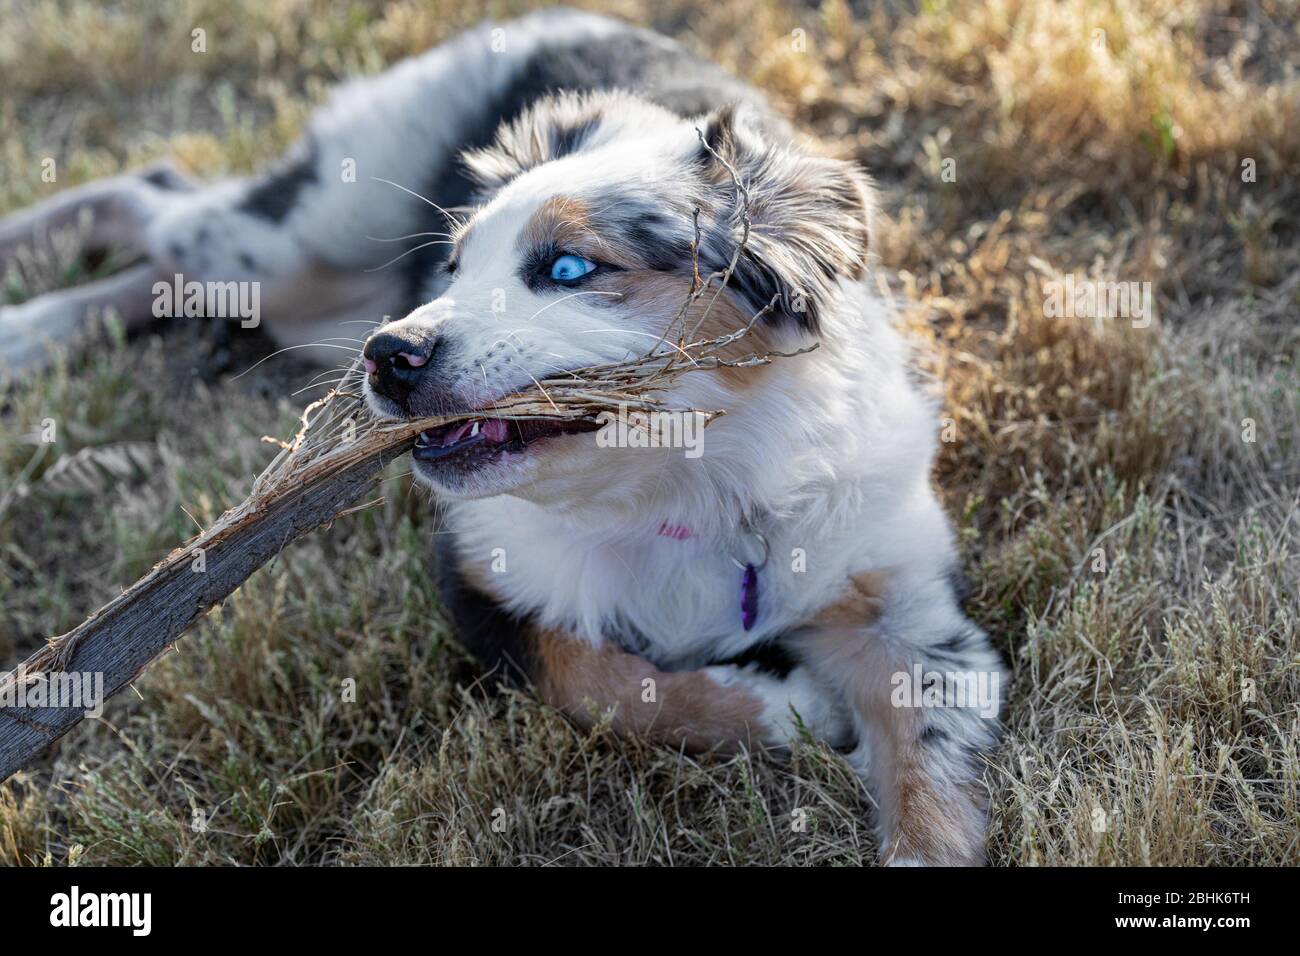 Cucciolo di pastore australiano masticando su un bastone nel cortile Foto Stock